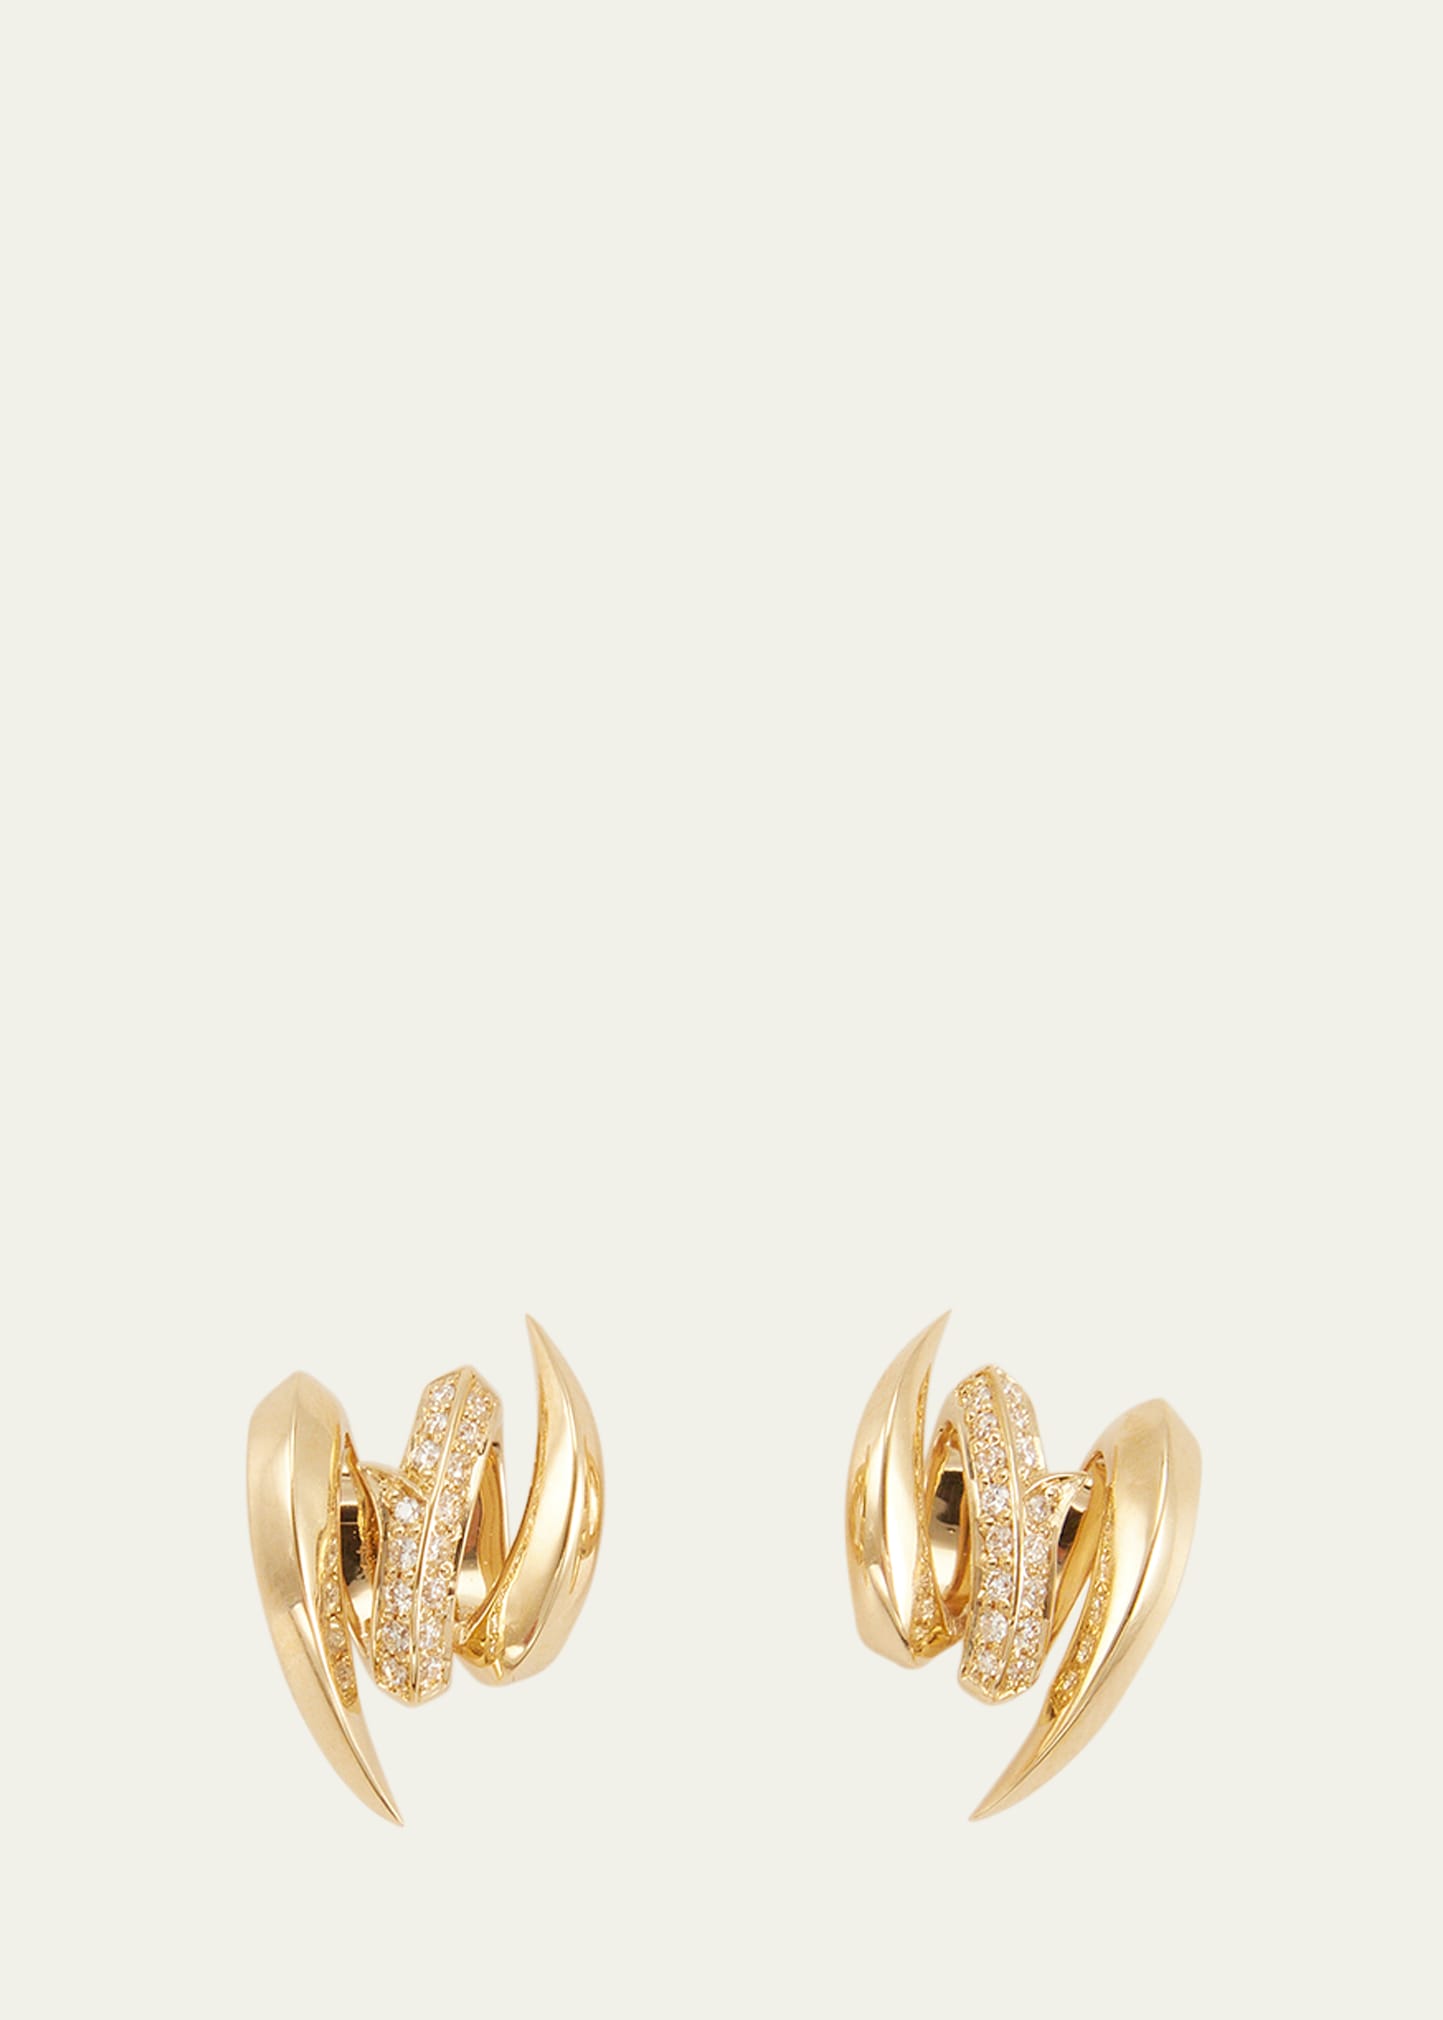 Stephen Webster 18k Gold Entwined Diamond Stud Earrings